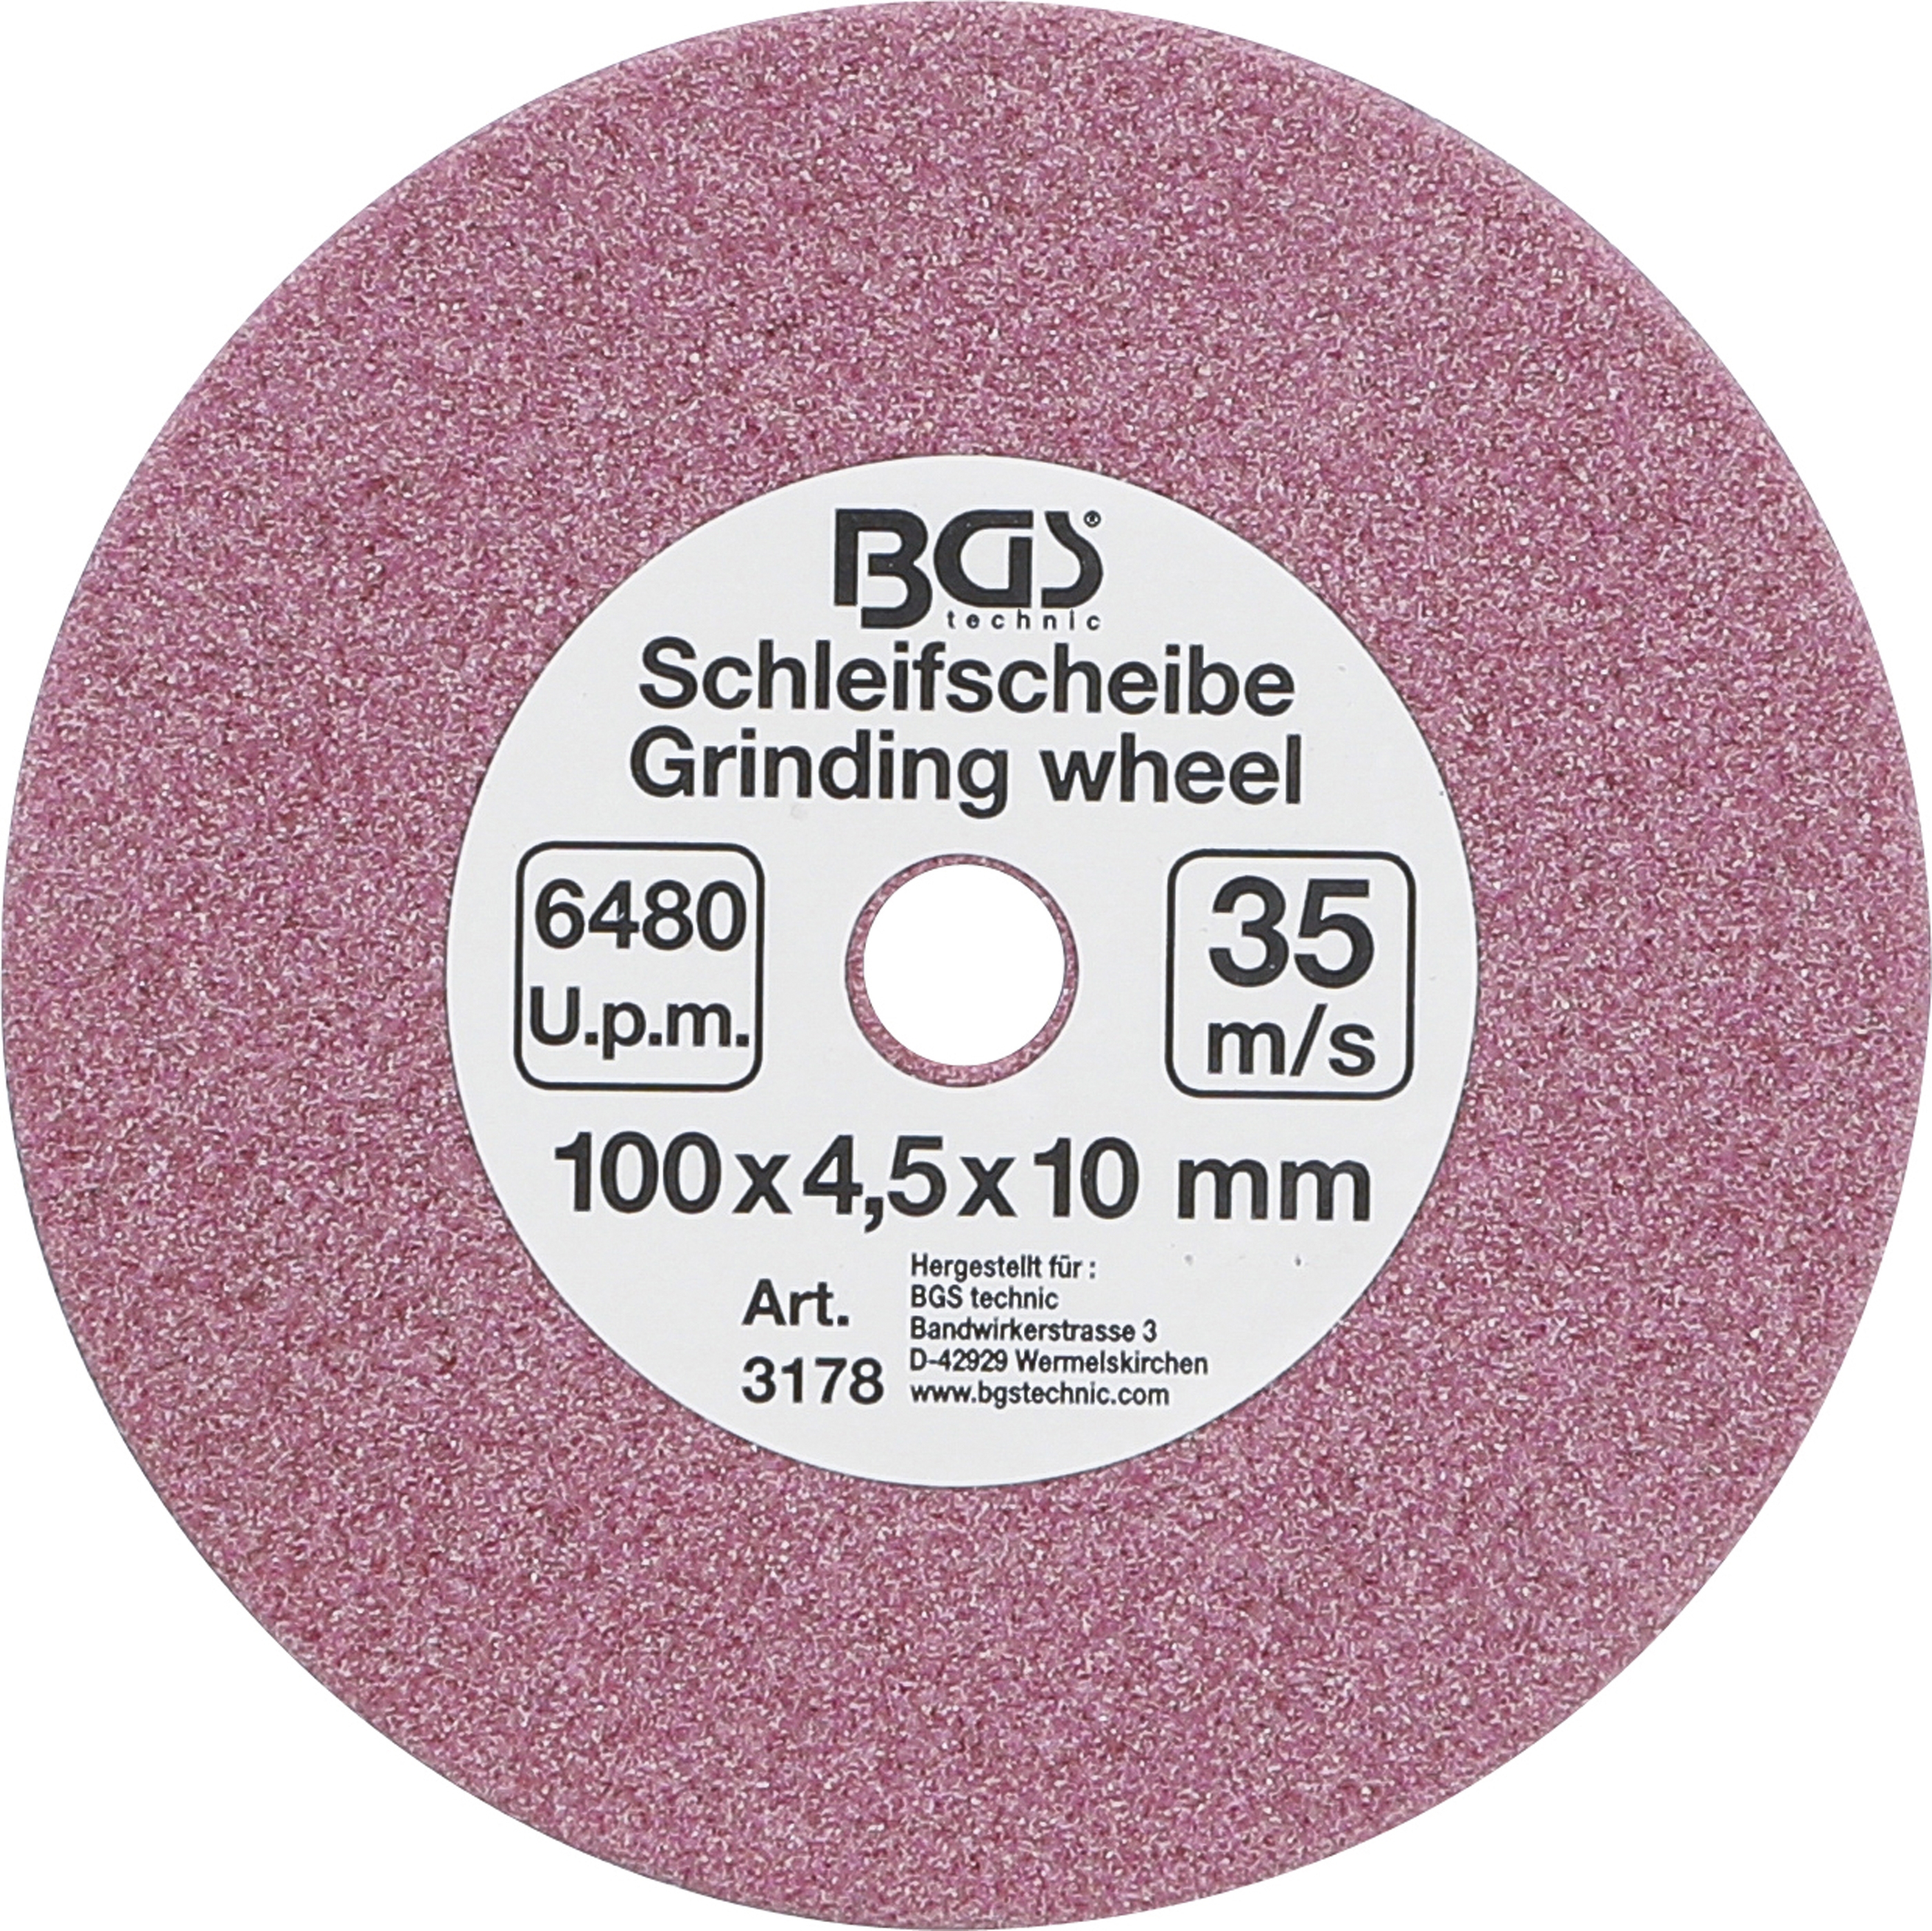 Schleifscheibe 100x4,5x10 mm (10 (3/8)+0,404") für Art. 3180 BGS 3178